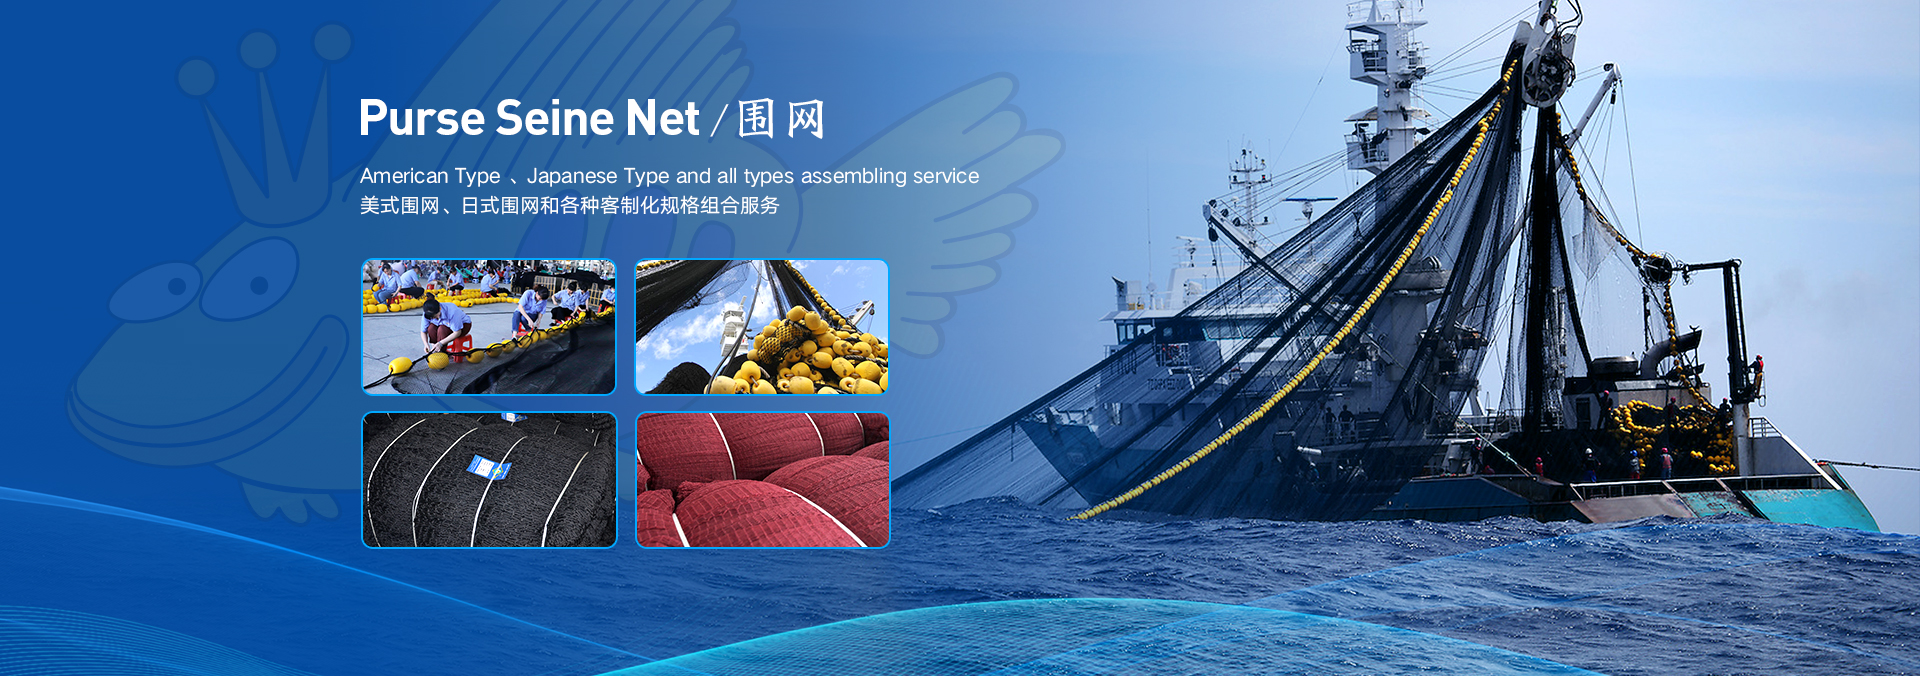 厦门市富远贸易有限公司RICH FISHING NETS CO.,LTD.